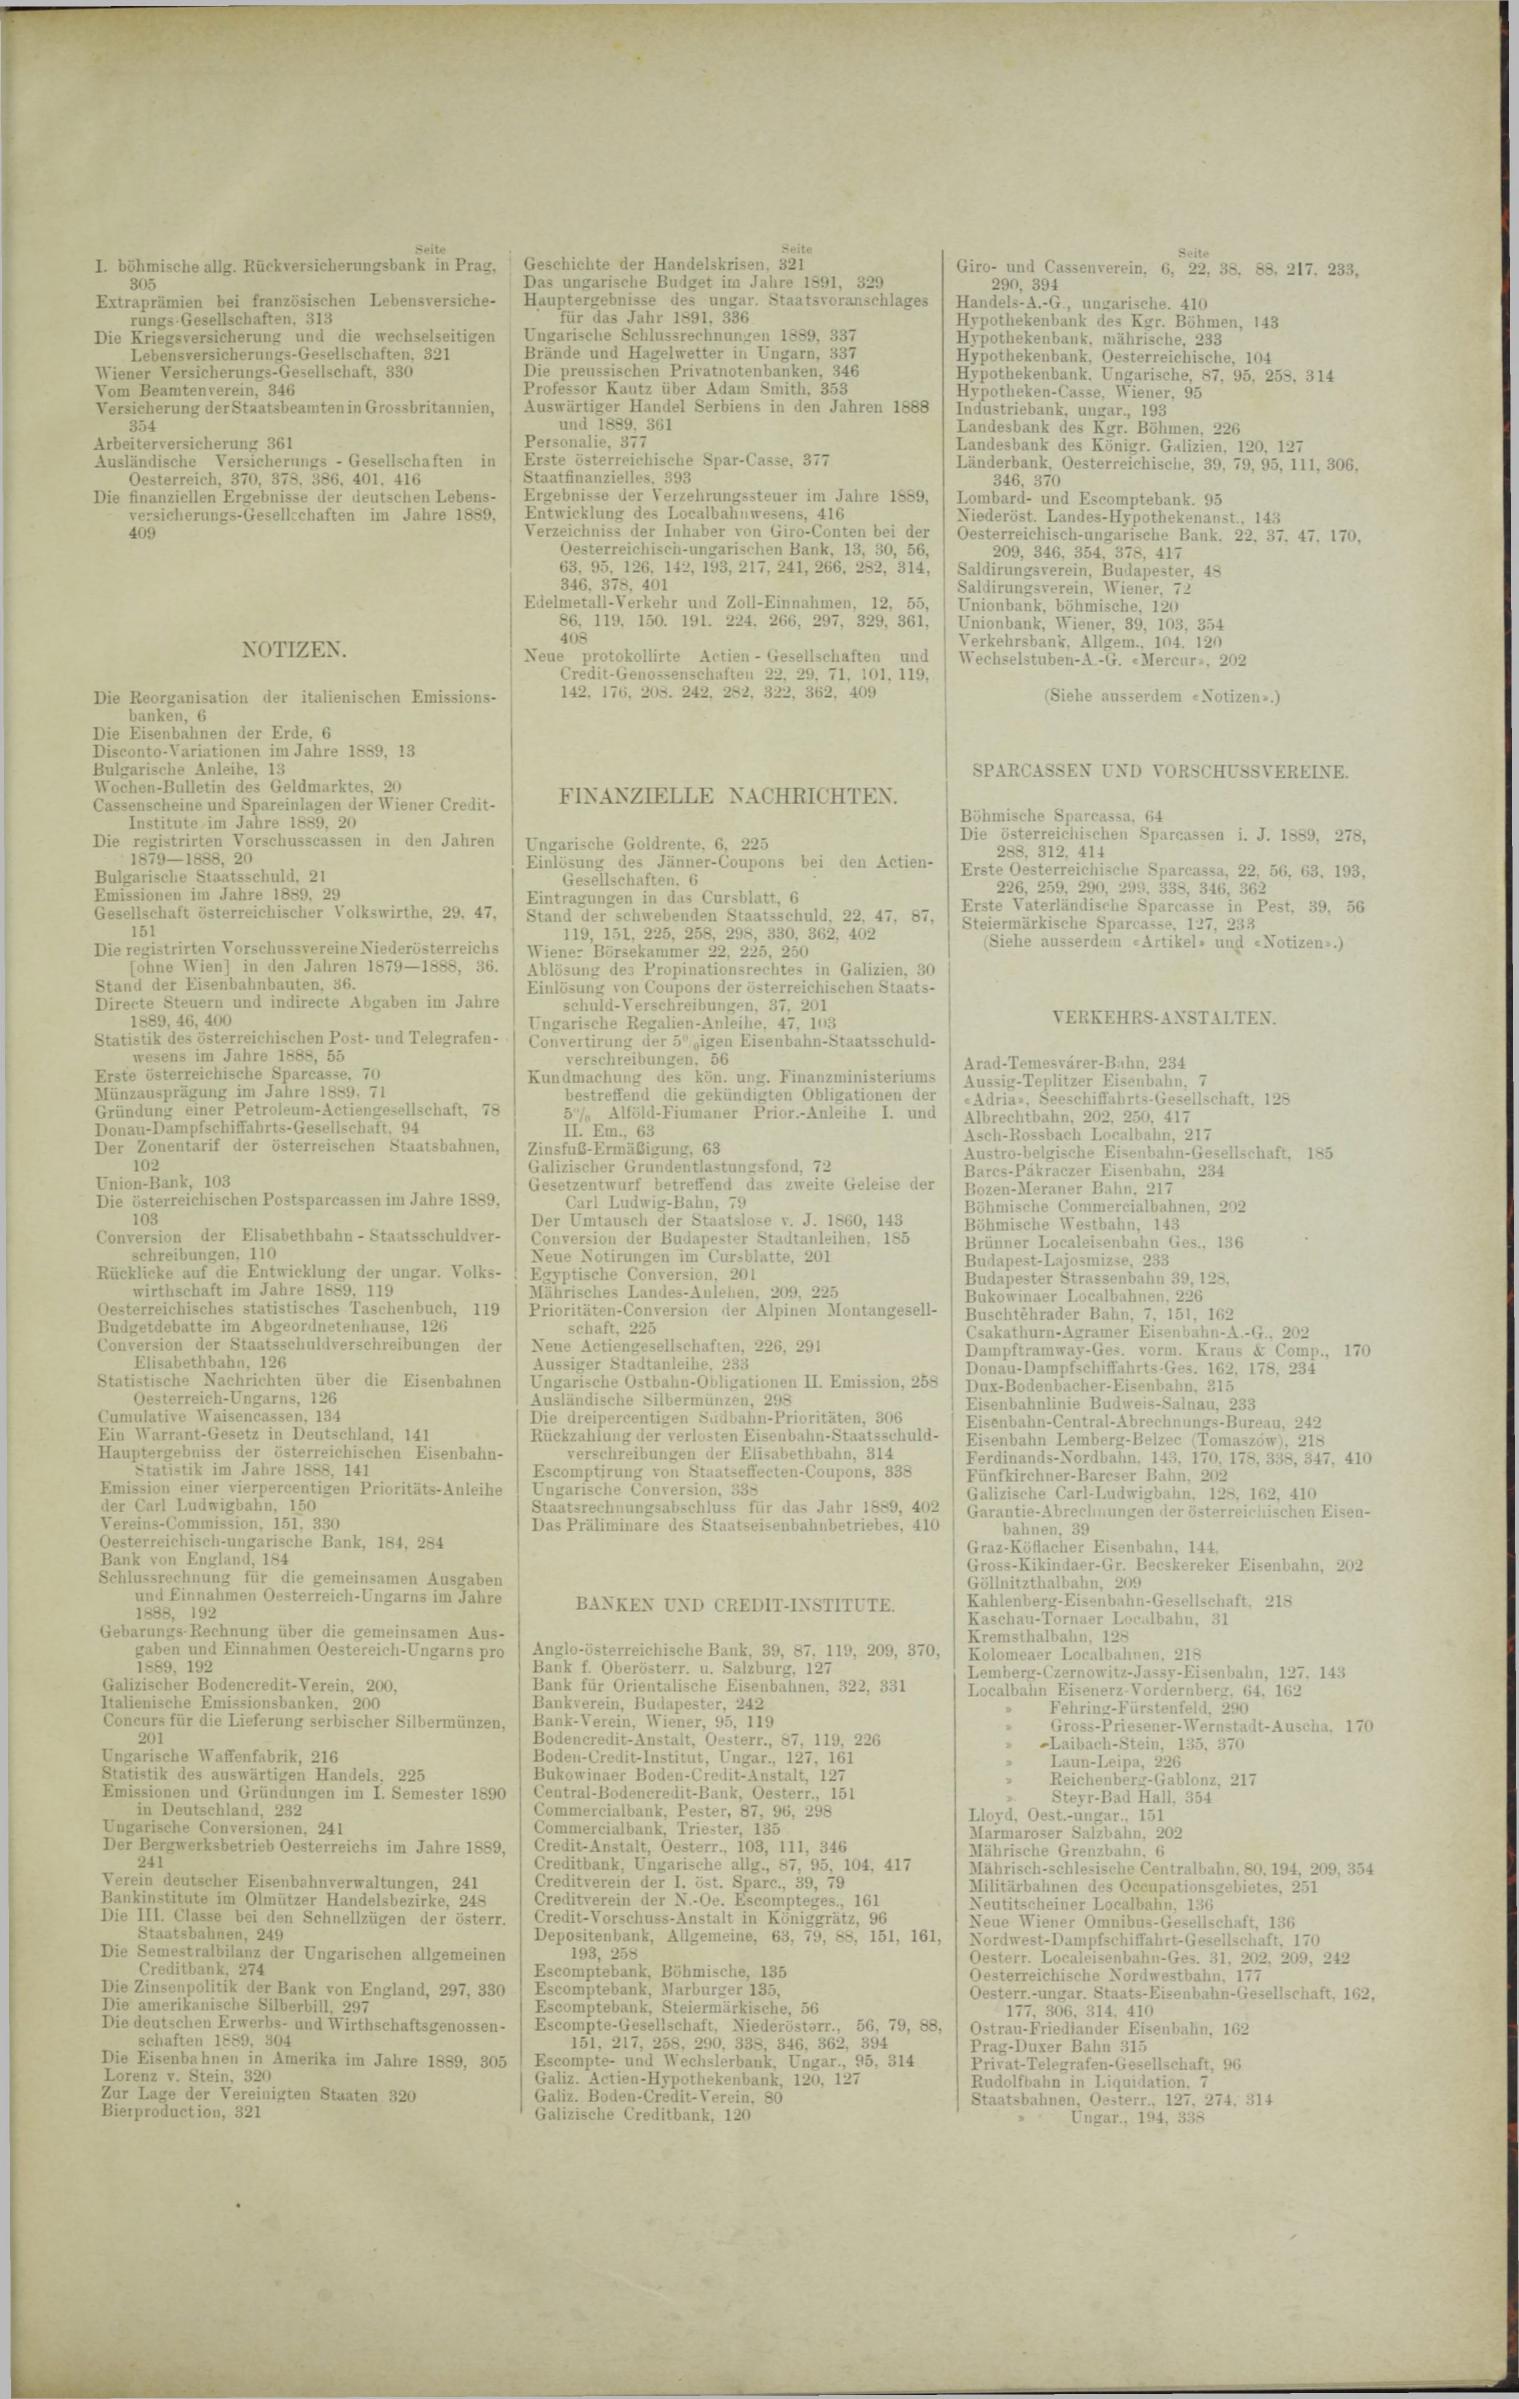 Der Tresor 28.08.1890 - Seite 11